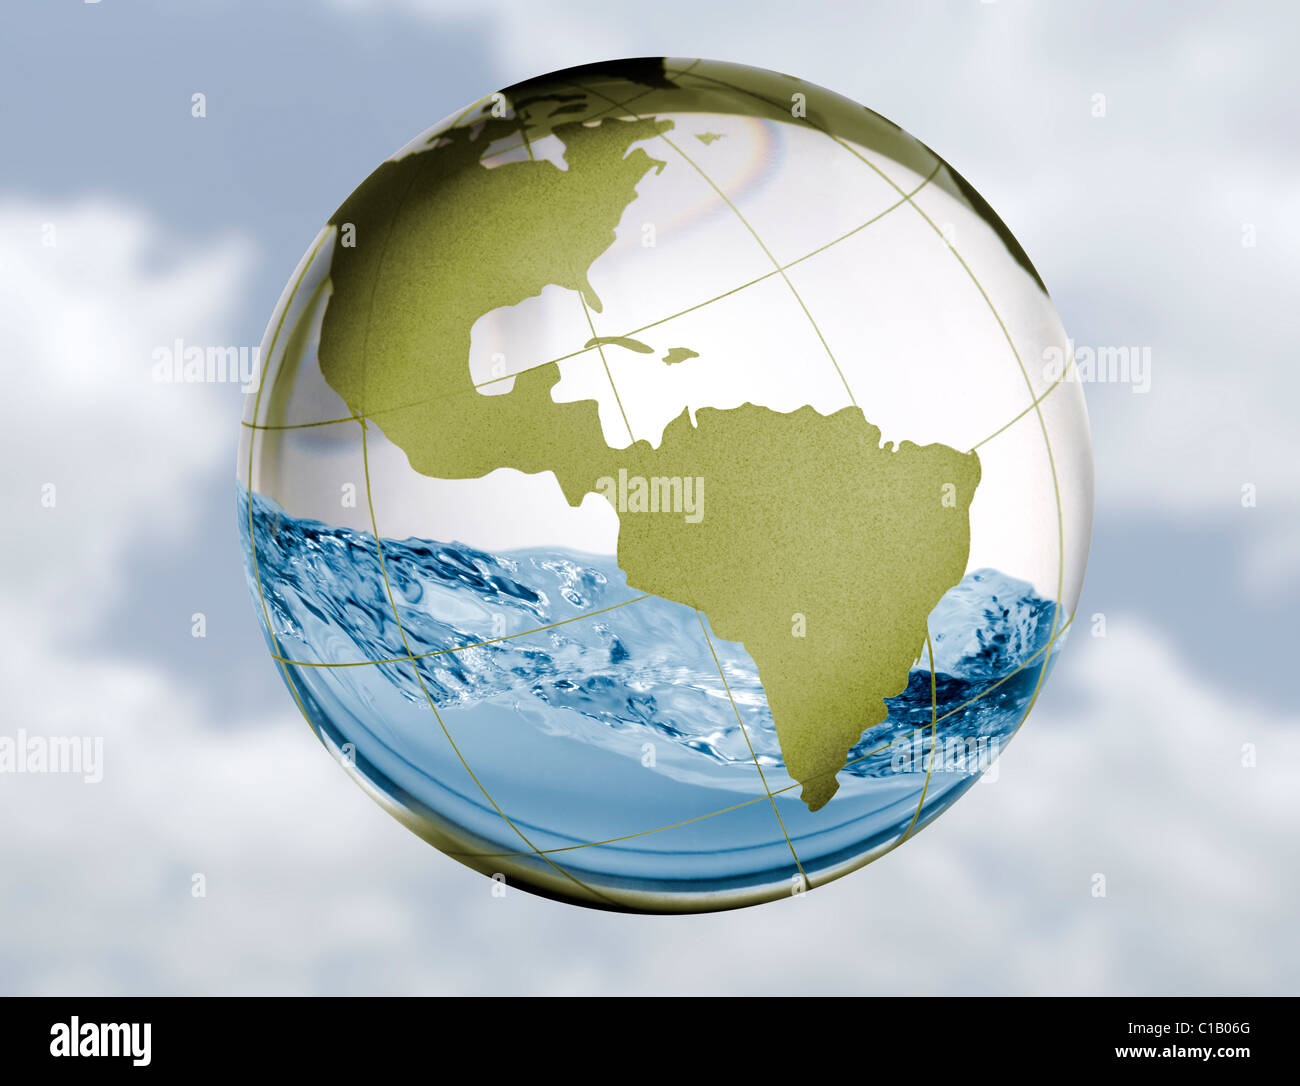 Un globo di vetro con acqua fanghiglia intorno all'interno di in un concetto di immagine per acqua fresca argomenti quali la fornitura, la siccità e le inondazioni, ecc Foto Stock